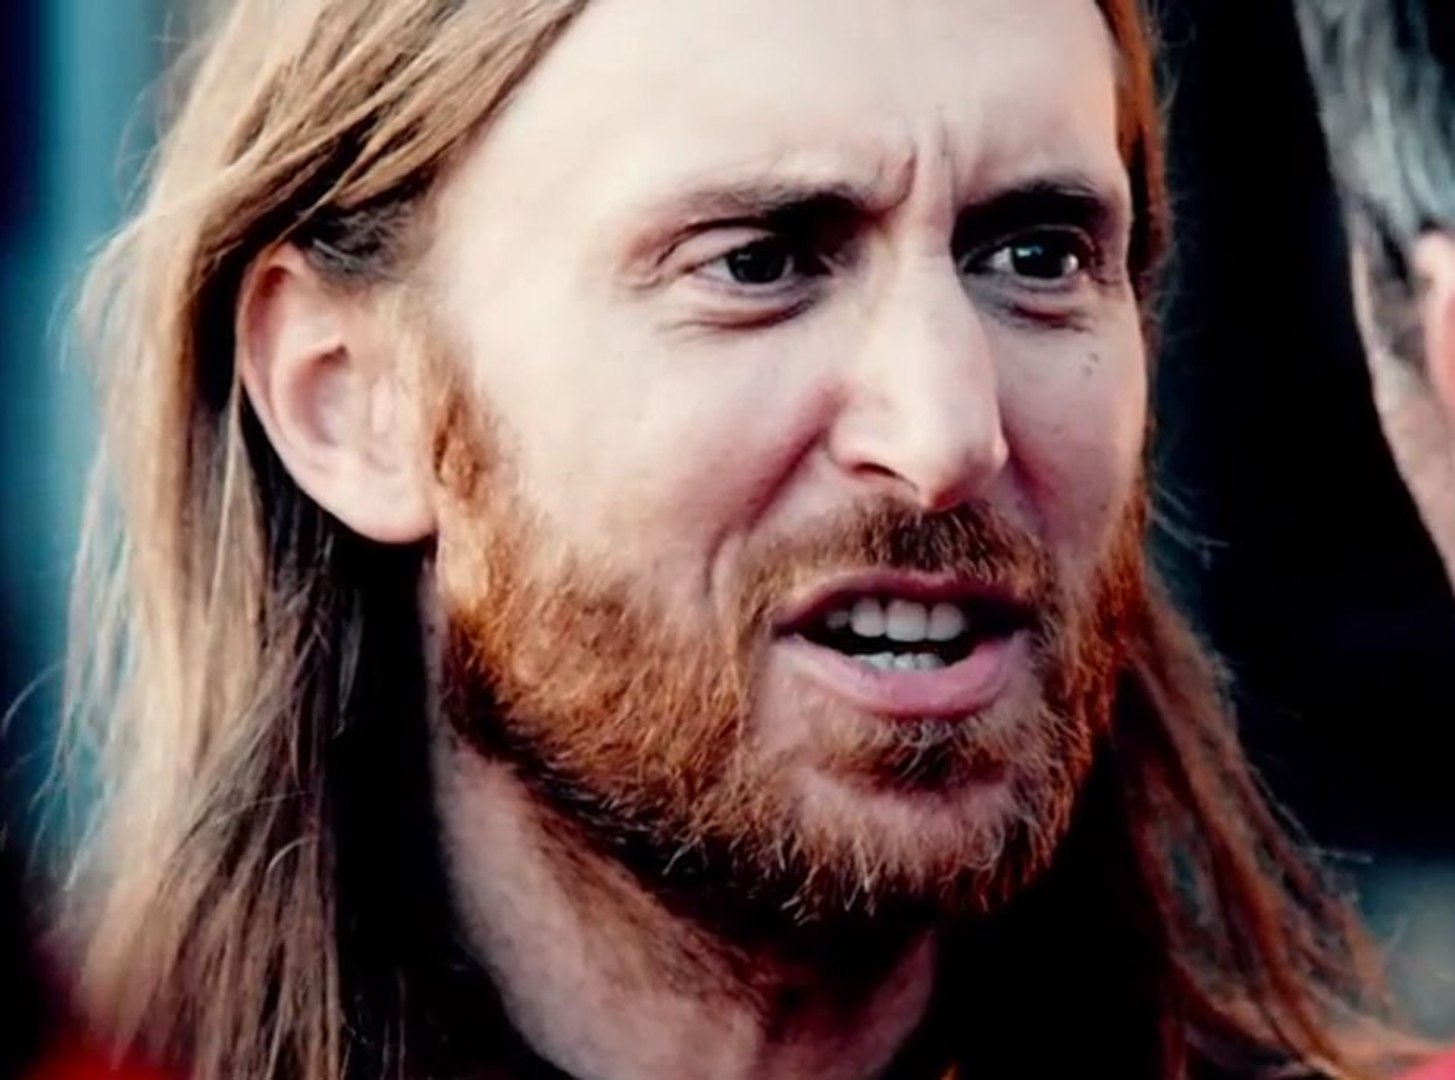 Vidéo : David Guetta : "Dangerous" devient le premier clip intéractif ! -  Vidéo Dailymotion